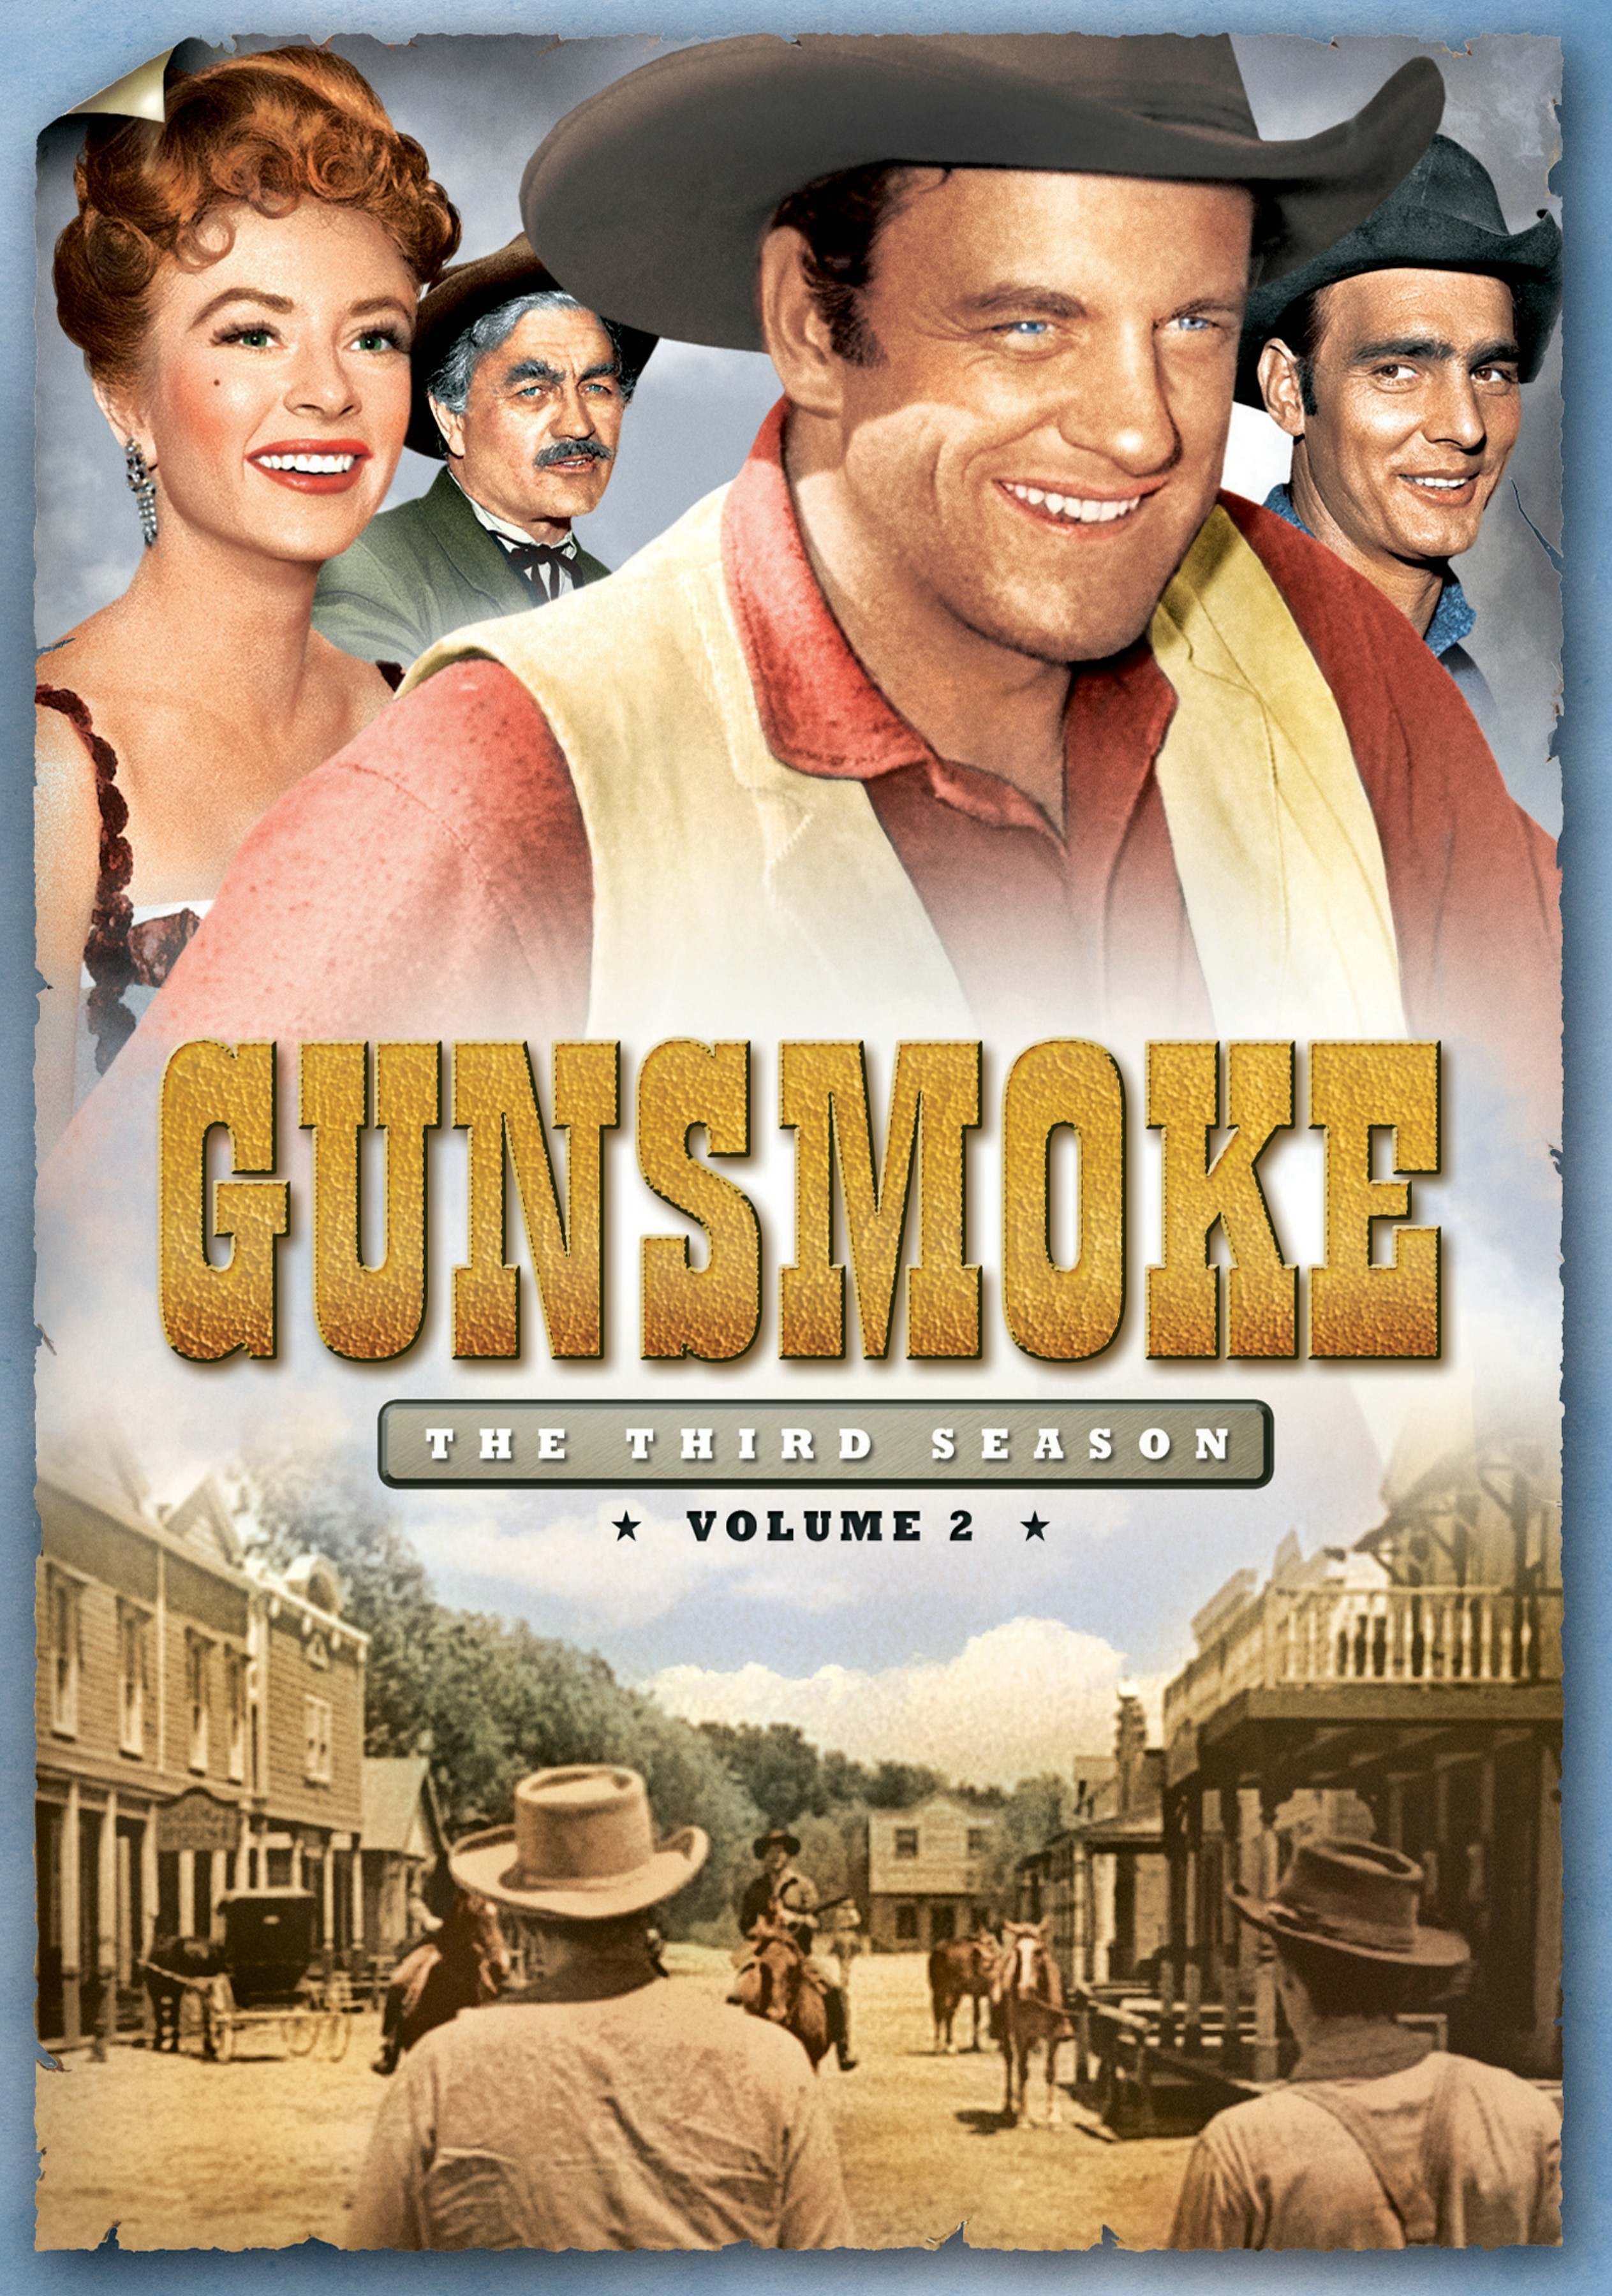 GUNSMOKE VOL 2